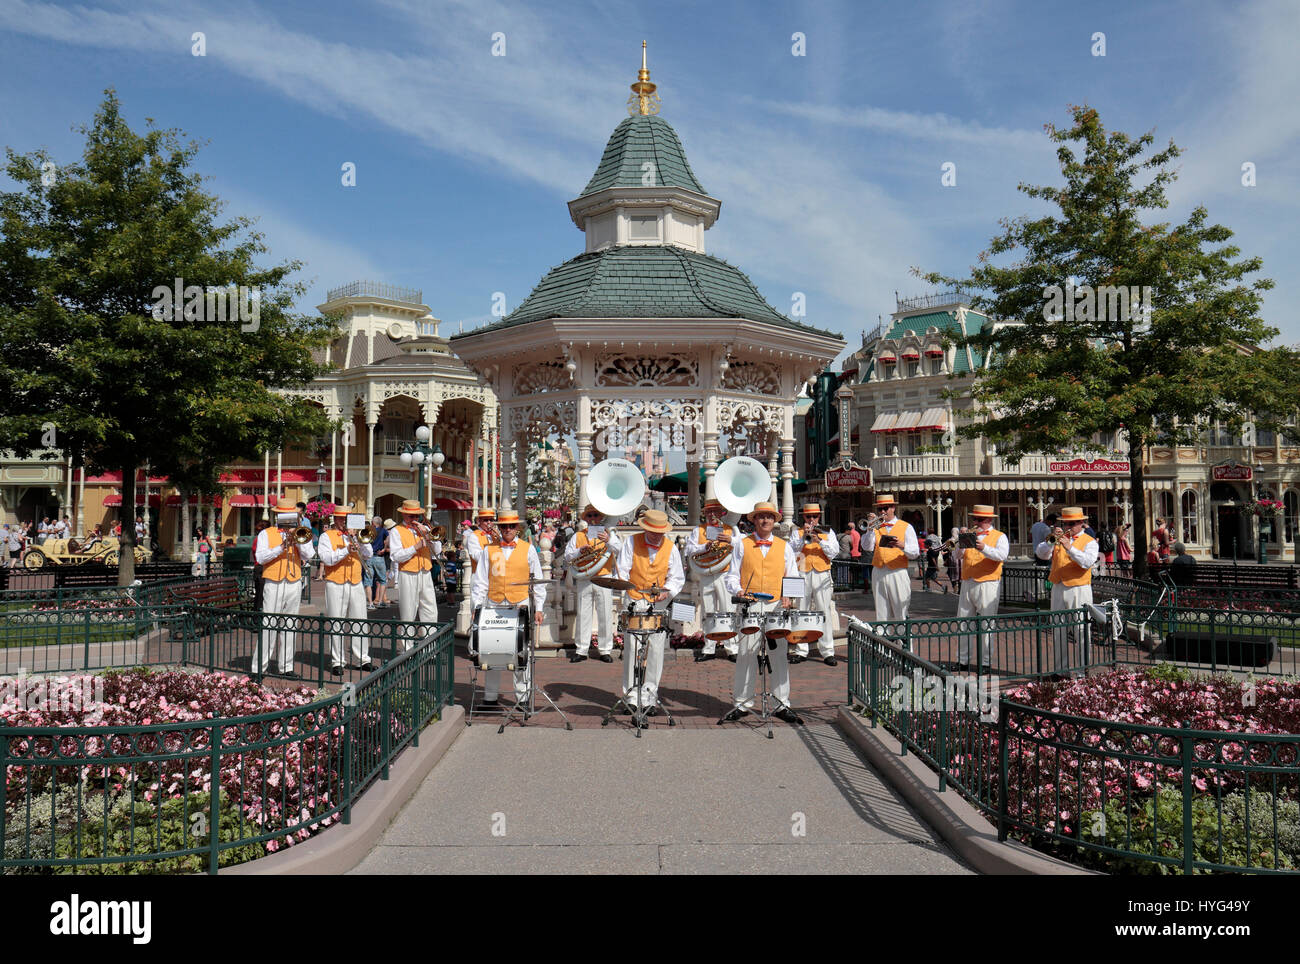 L'été à Disneyland brass band avant du kiosque près de l'entrée de Disneyland Paris, Marne-la-Vallée, près de Paris, France. Banque D'Images